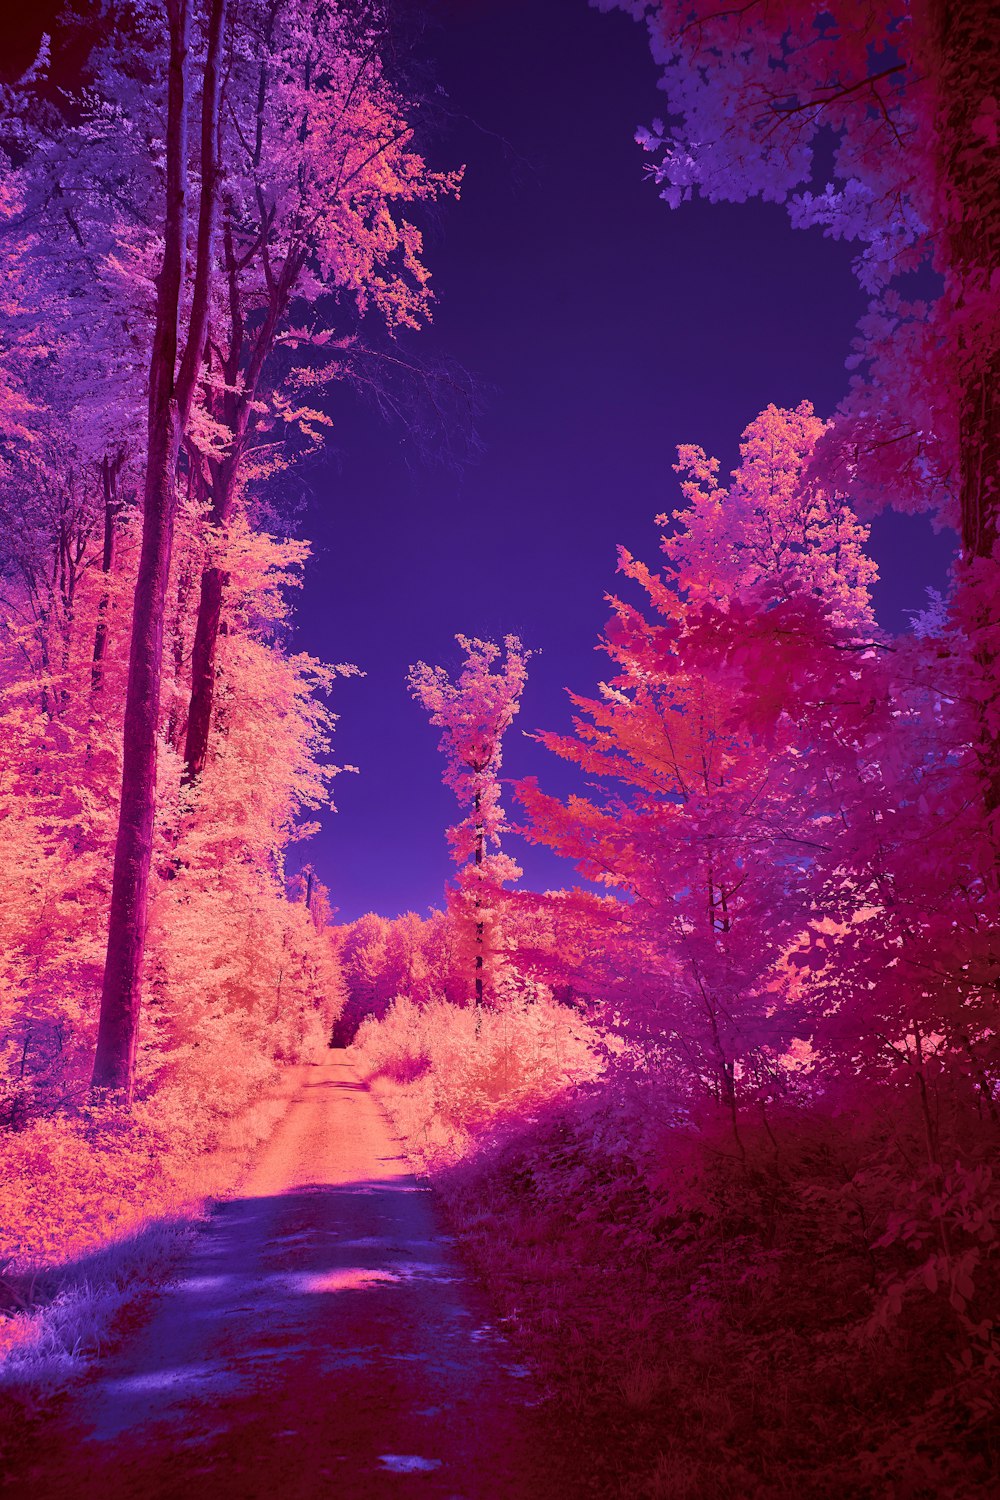 Immagine a infrarossi di un sentiero nel bosco